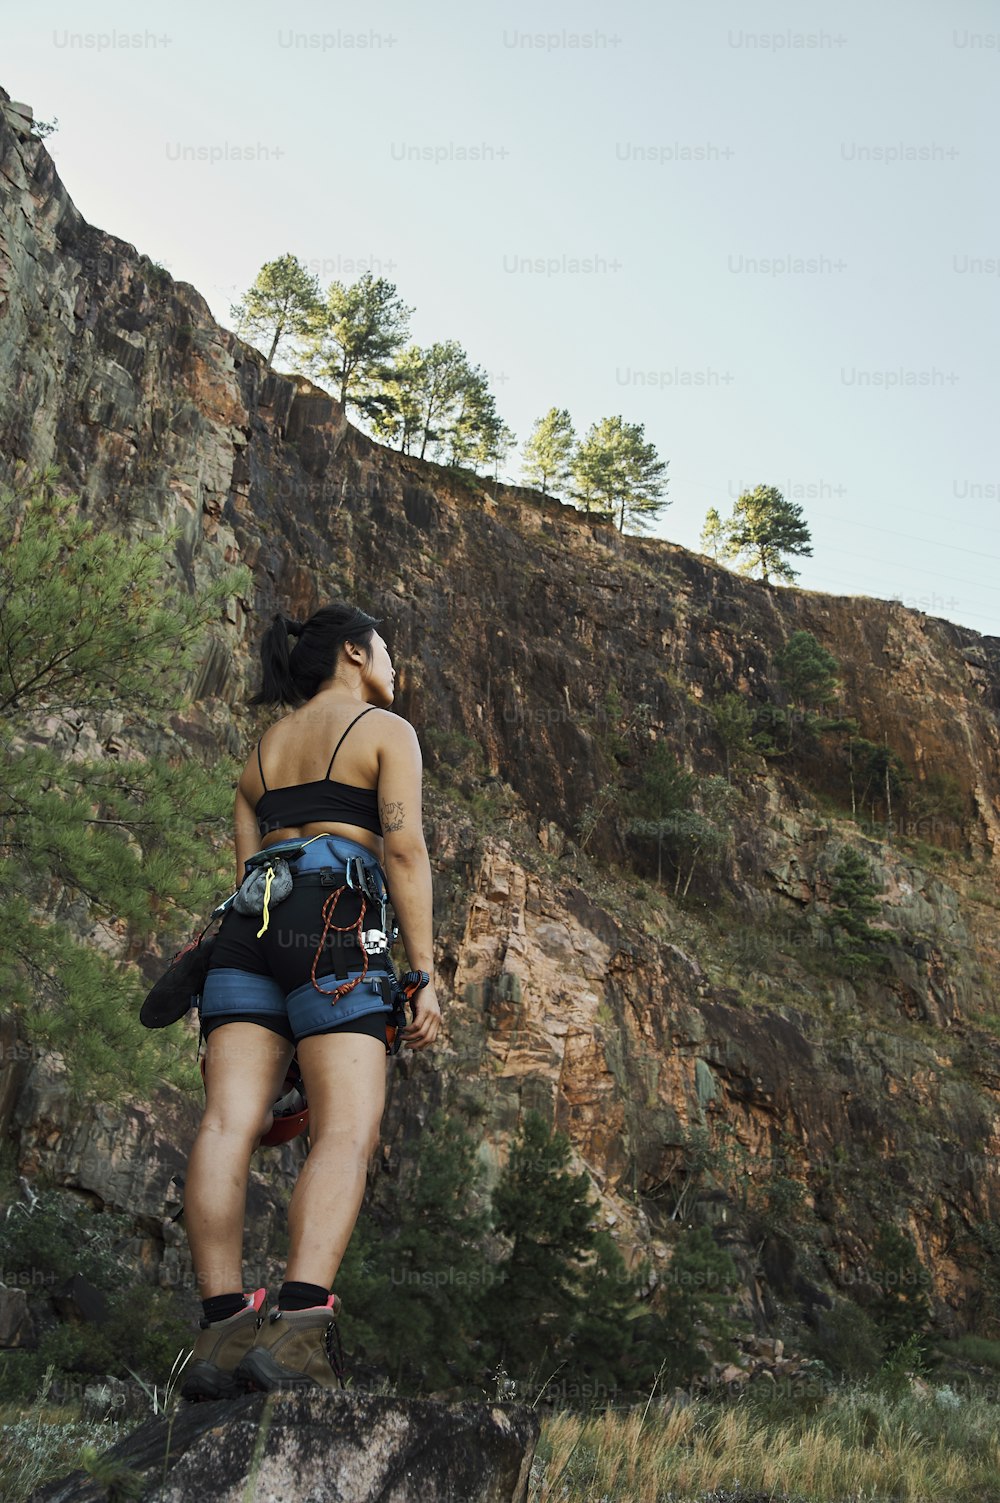 Una mujer parada en la cima de una roca junto a un bosque